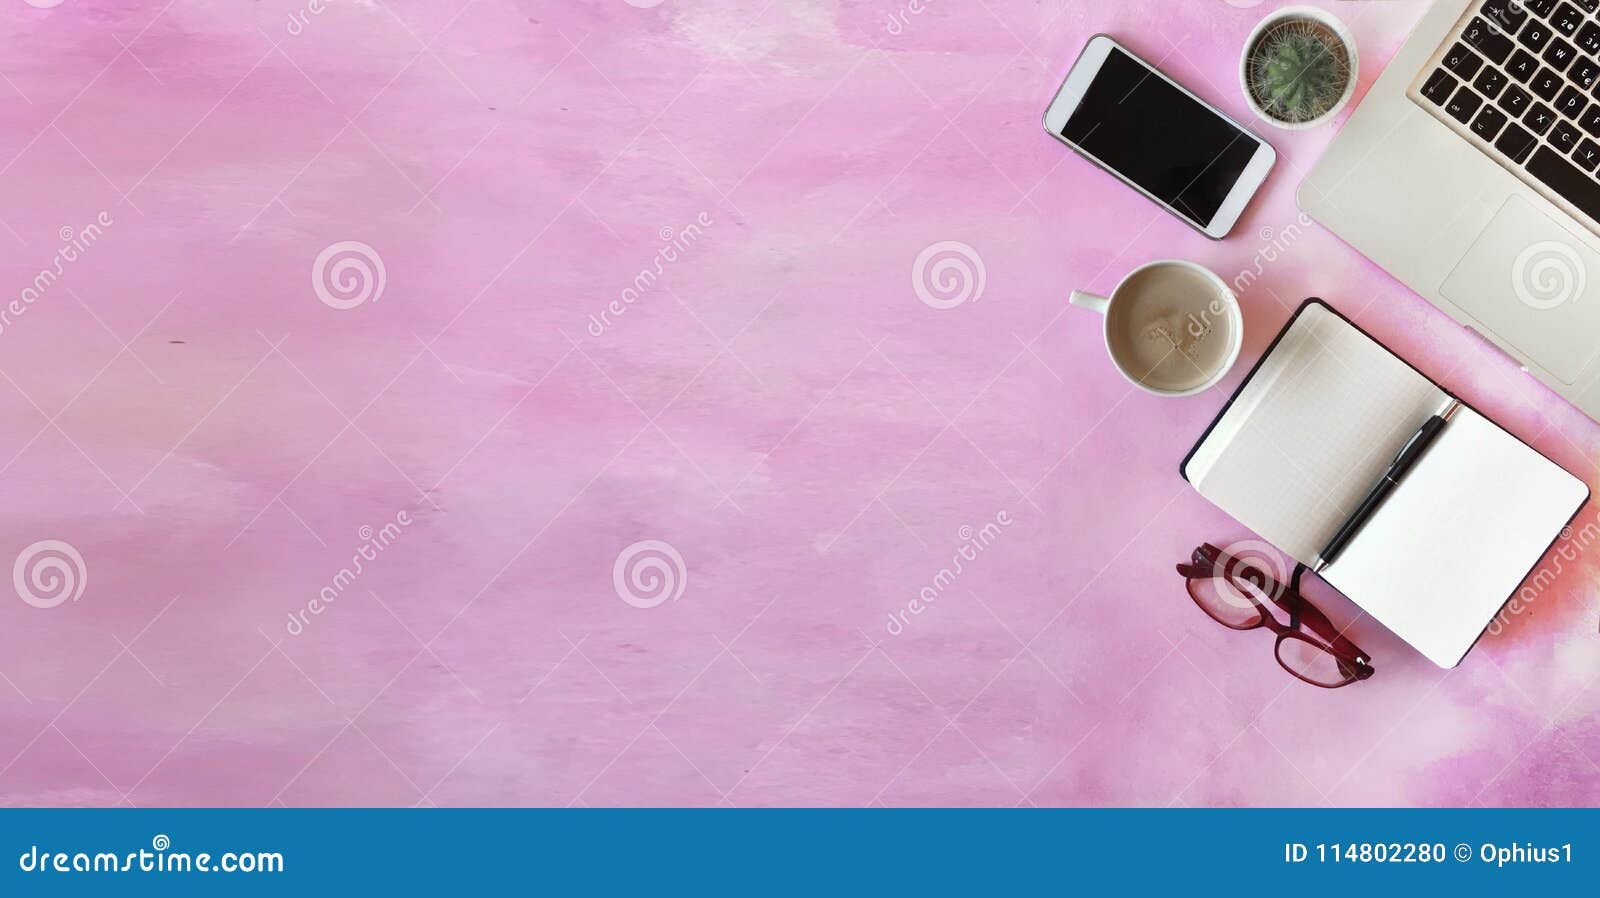 Thưởng thức không gian văn phòng tươi tắn với nền hồng ngọt ngào. Bộ sưu tập hình ảnh với nền hồng sẽ đưa bạn đến một không gian tươi mới, nơi bạn có thể tập trung hoàn thành công việc của mình mà không bị ánh sáng mạnh hoặc màu sắc nhạt nhẽo làm phiền trở.